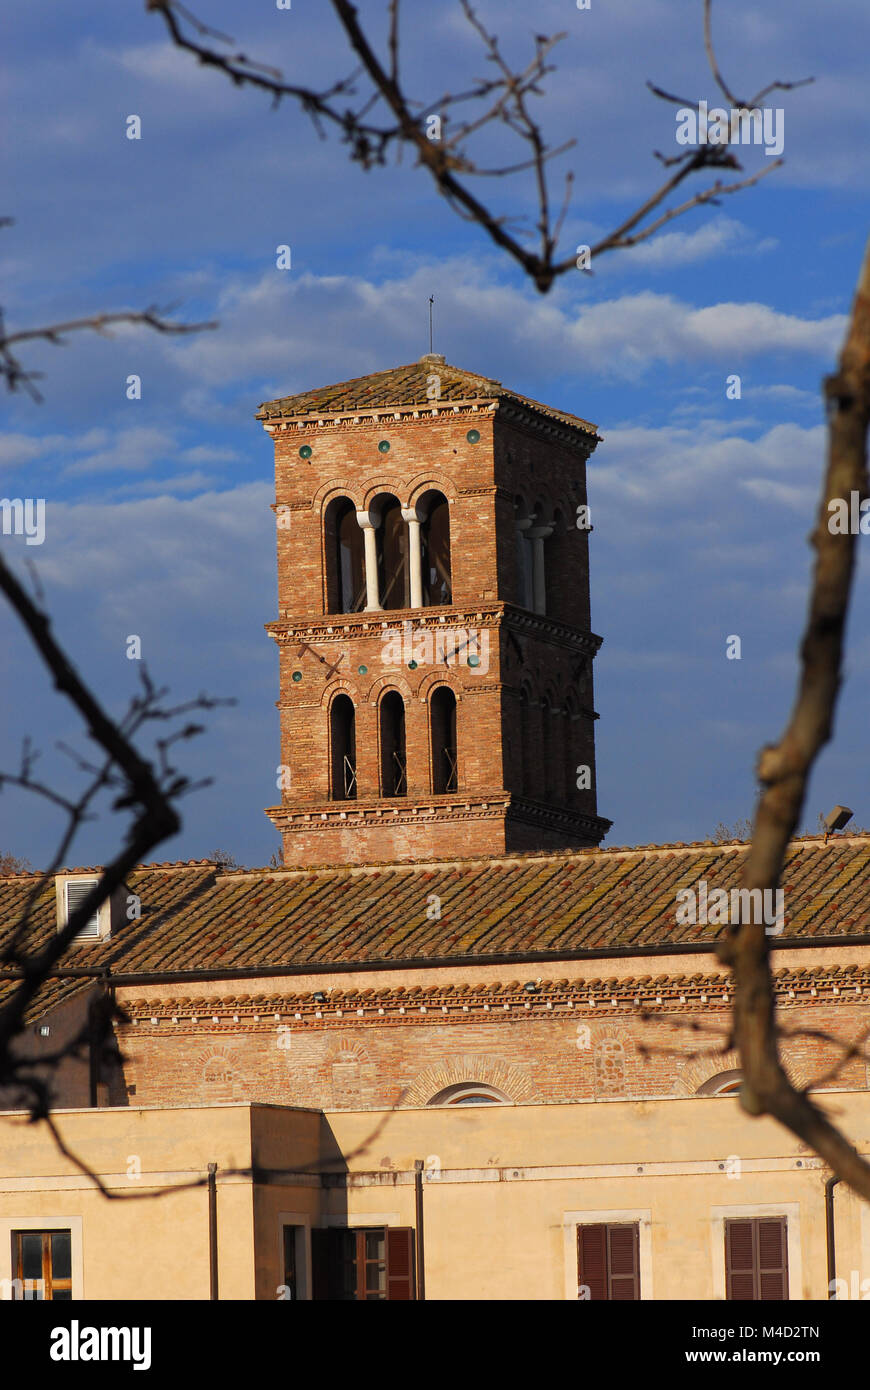 San Bartolomeo all'Isola antico campanile medievale nel centro storico di Roma, si vede attraverso i rami degli alberi Foto Stock